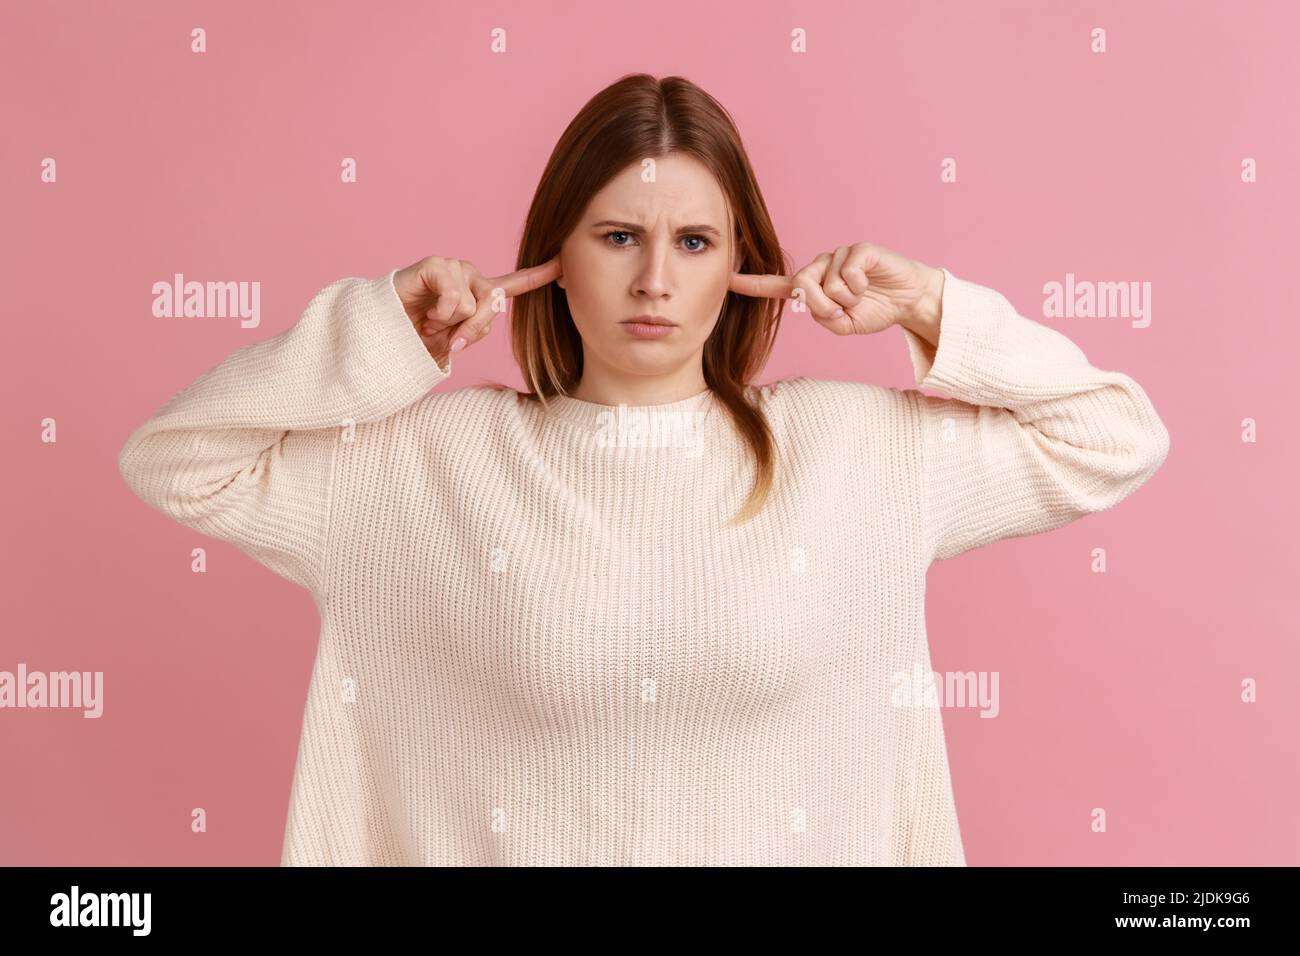 No quiero oír esto. Retrato de una mujer rubia infeliz de pie y poniendo el dedo en sus orejas, mirando la cámara, usando un suéter blanco. Estudio en interior grabado aislado sobre fondo rosa. Foto de stock